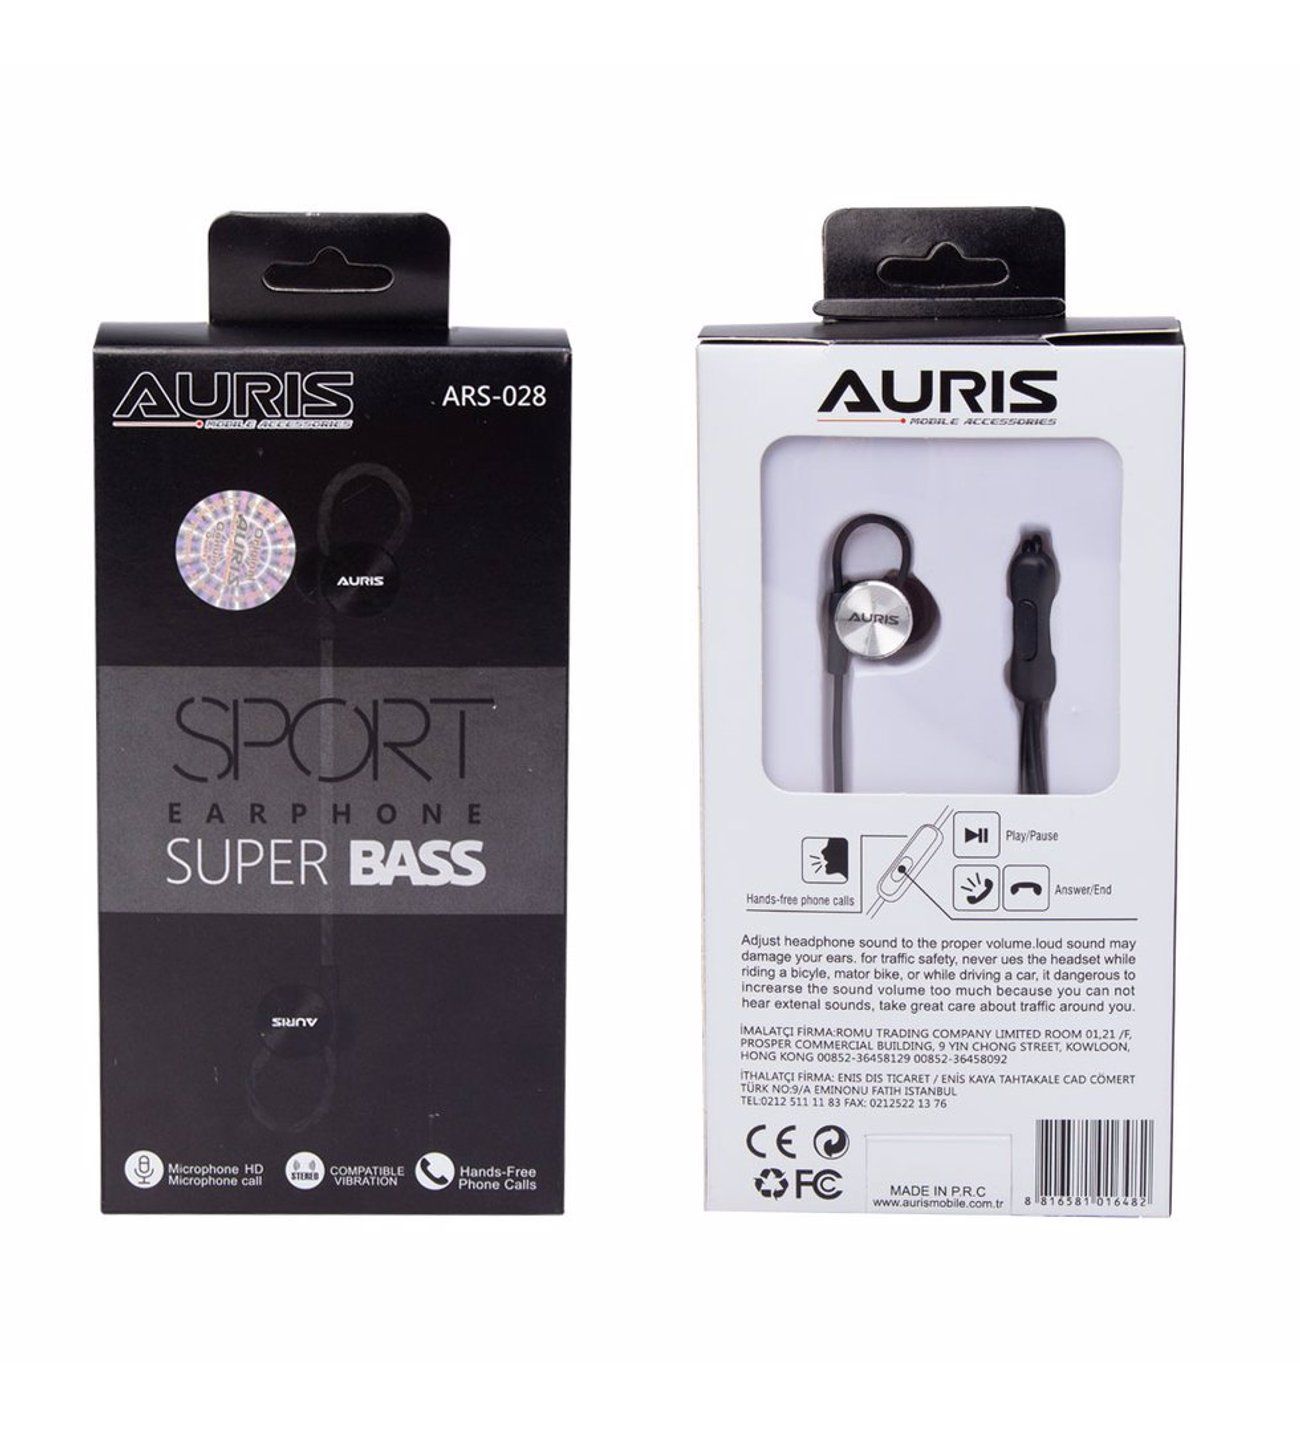 Auris Mikrofonlu Kablolu Kulakiçi Kulaklık ARS-030